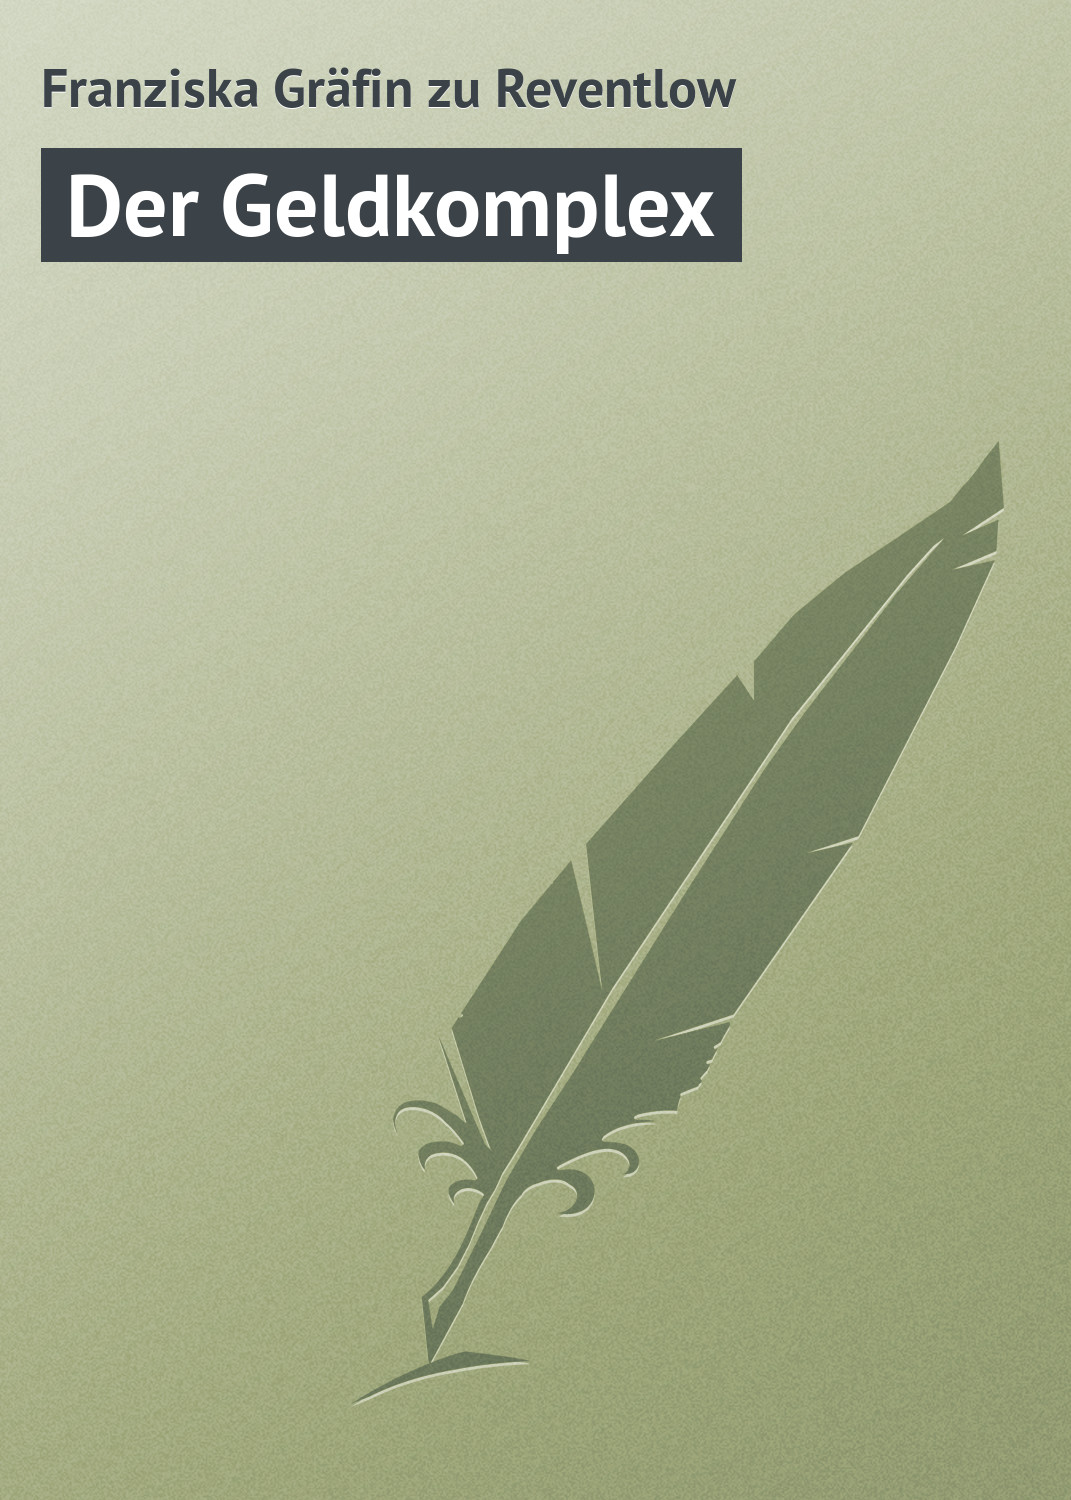 Книга Der Geldkomplex из серии , созданная Franziska Gräfin, может относится к жанру Зарубежная старинная литература, Зарубежная классика. Стоимость электронной книги Der Geldkomplex с идентификатором 21105158 составляет 5.99 руб.